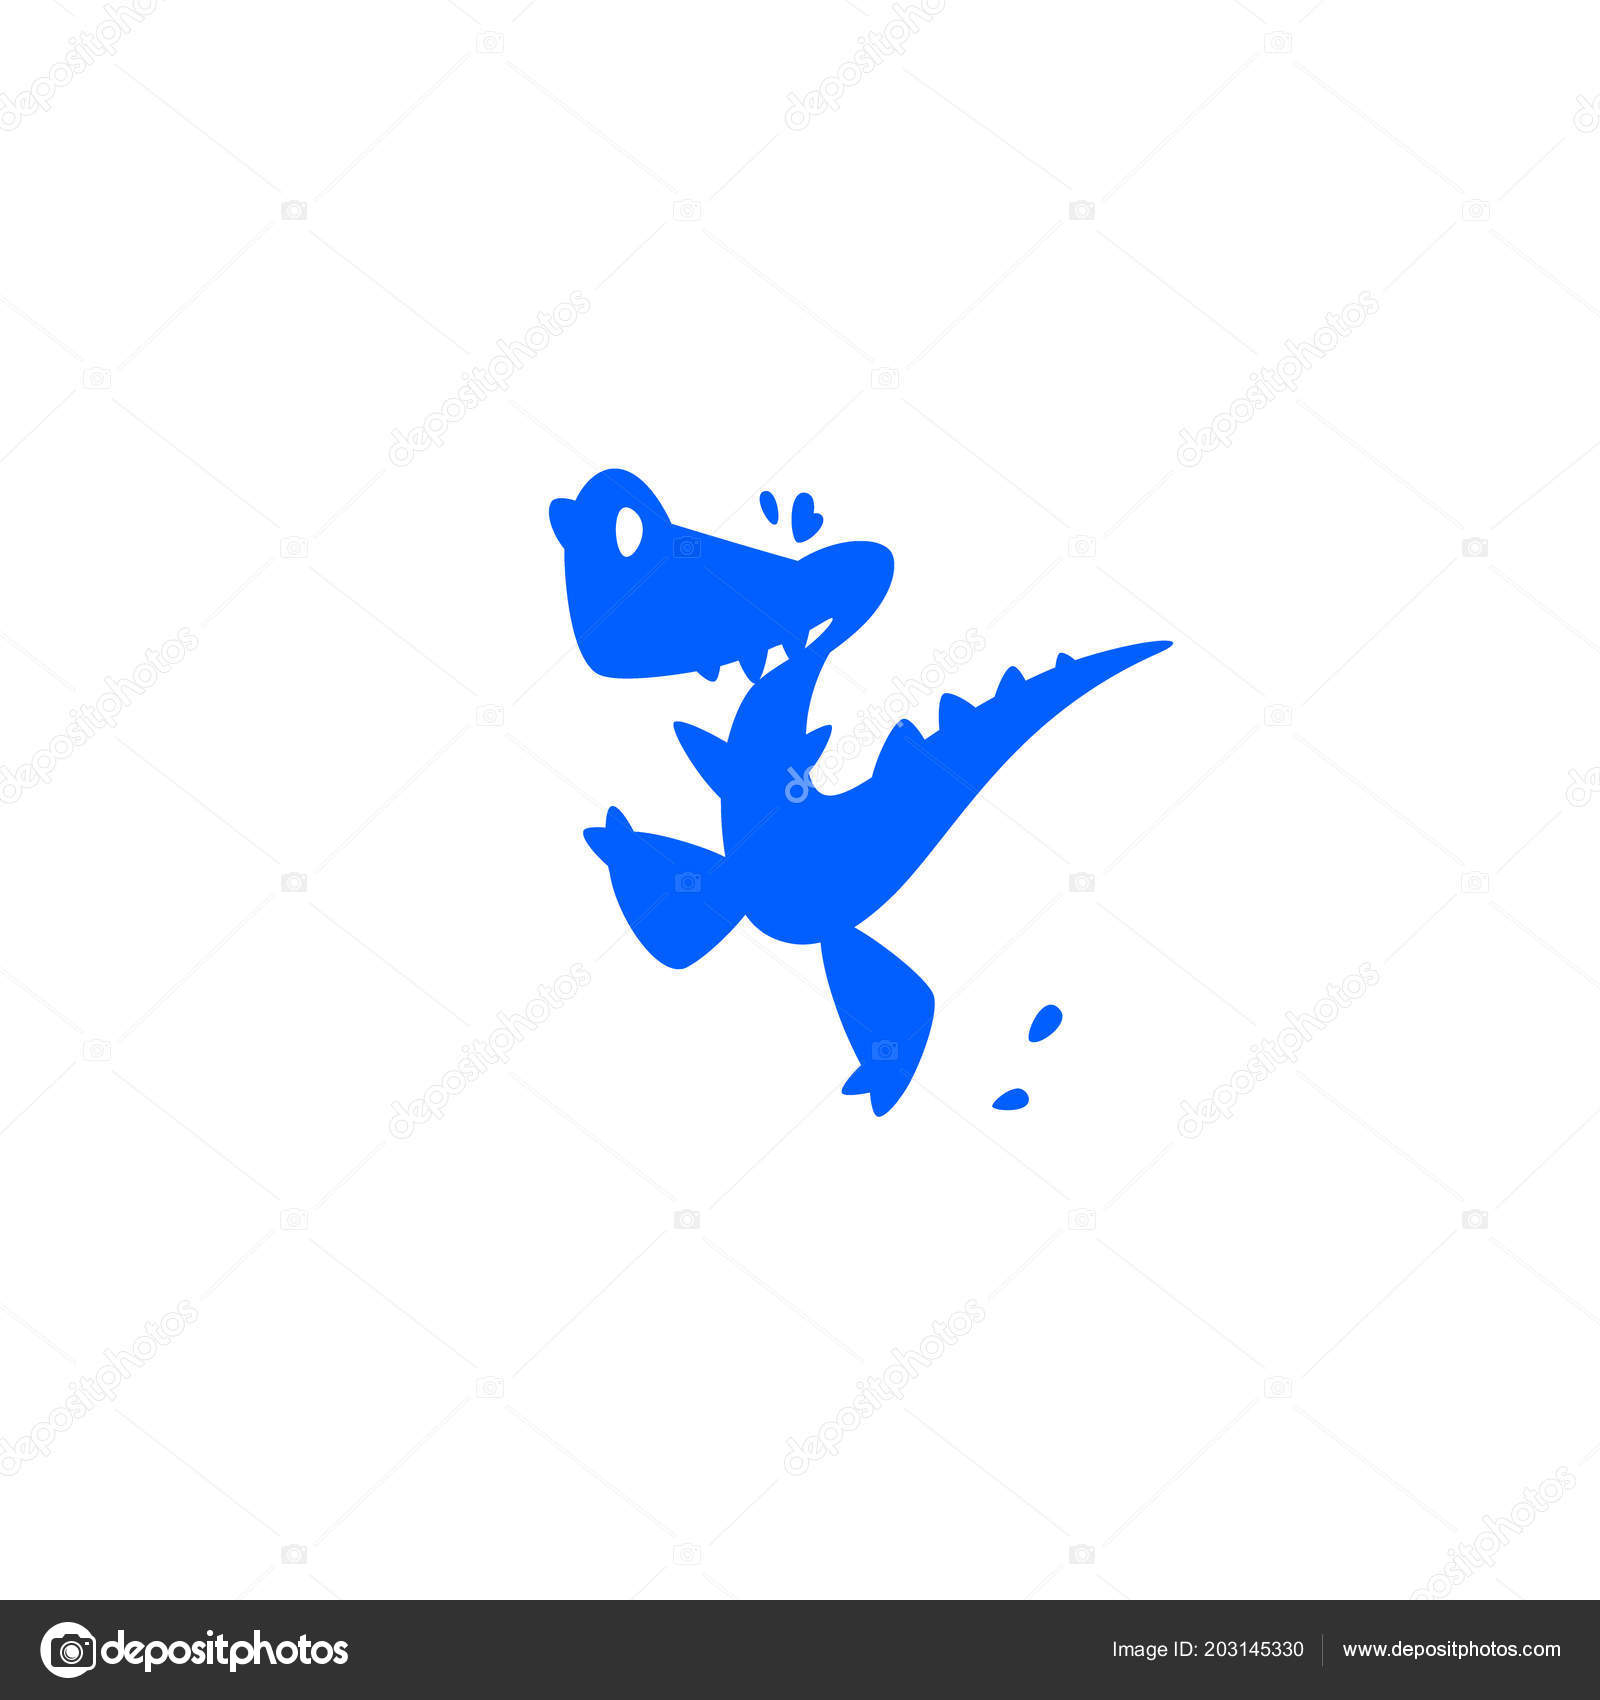 Desenho Animado Com O Personagem Dinossauro Do Pequeno Tiranossauro Rex  Ilustração Stock - Ilustração de logotipo, brinquedo: 232546479